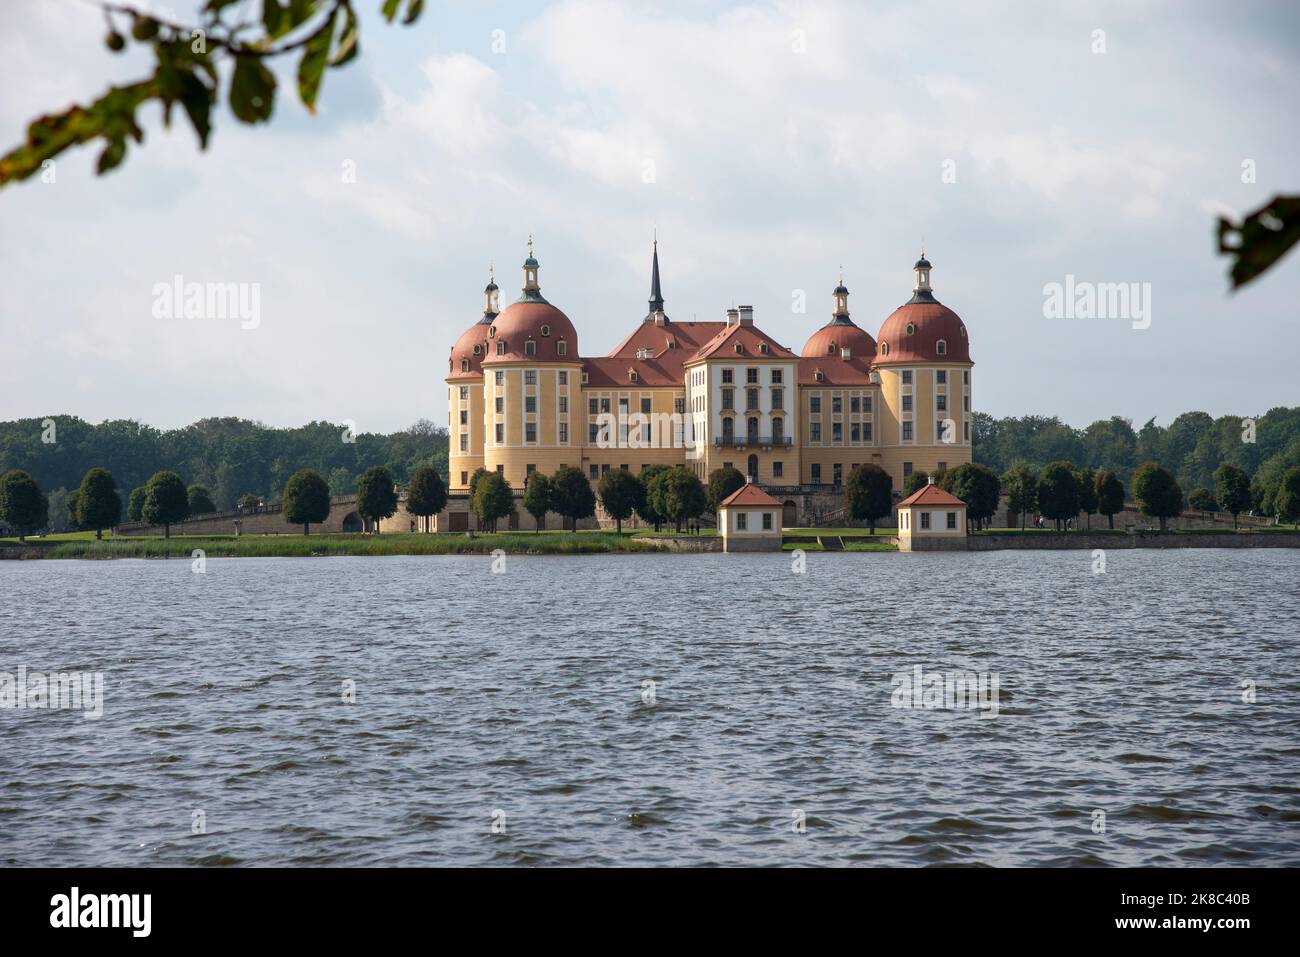 Majestätisches Schloss moritzburg sachsen deutschland Stockfoto